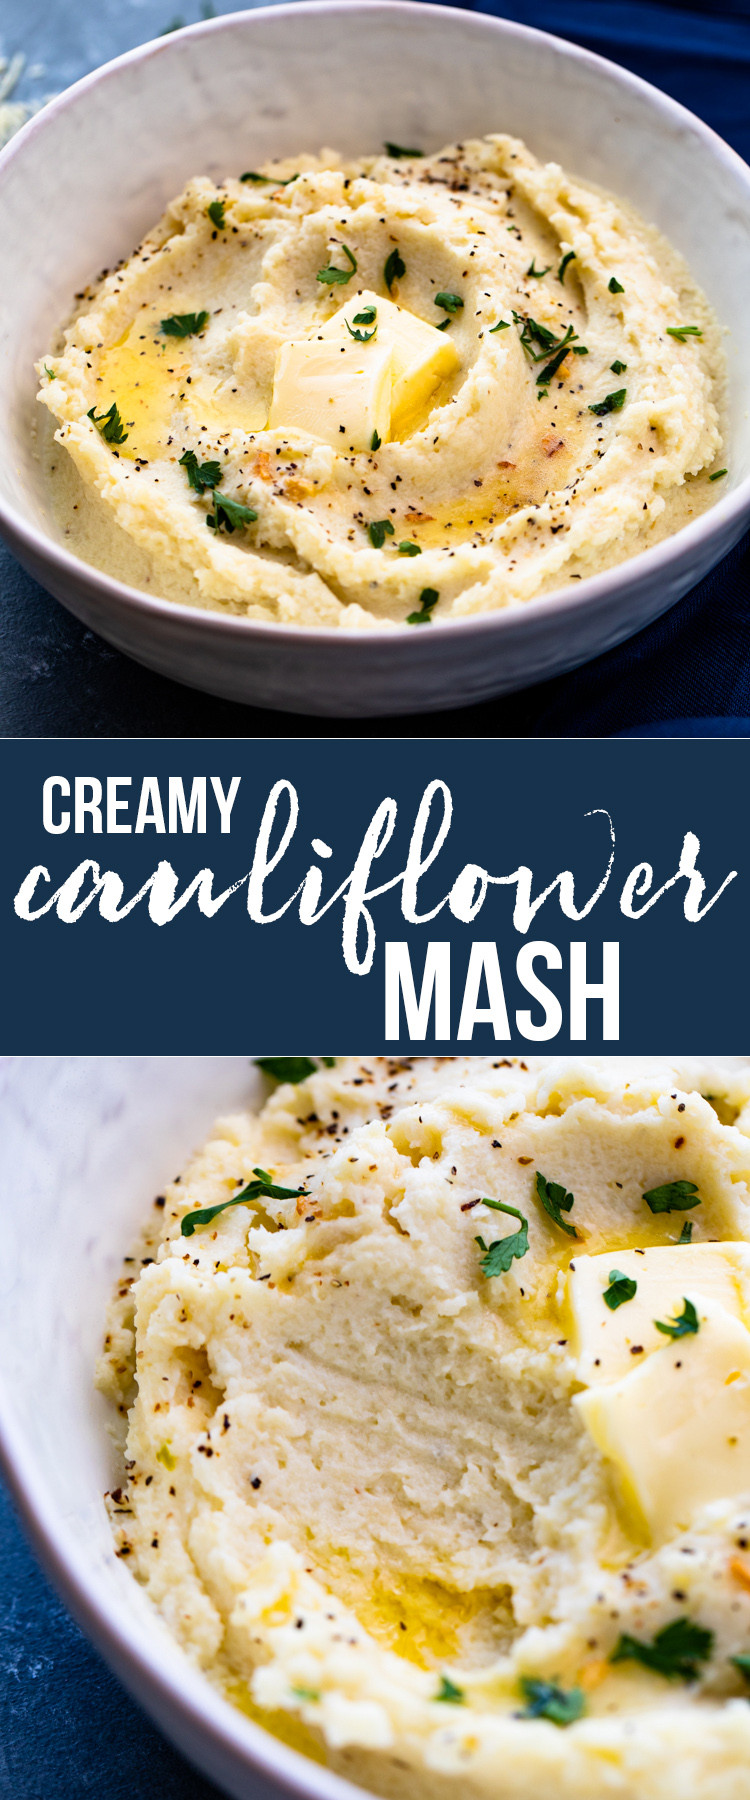 Best Mashed Cauliflower Keto
 The Best Creamy Mashed Cauliflower Low carb Keto